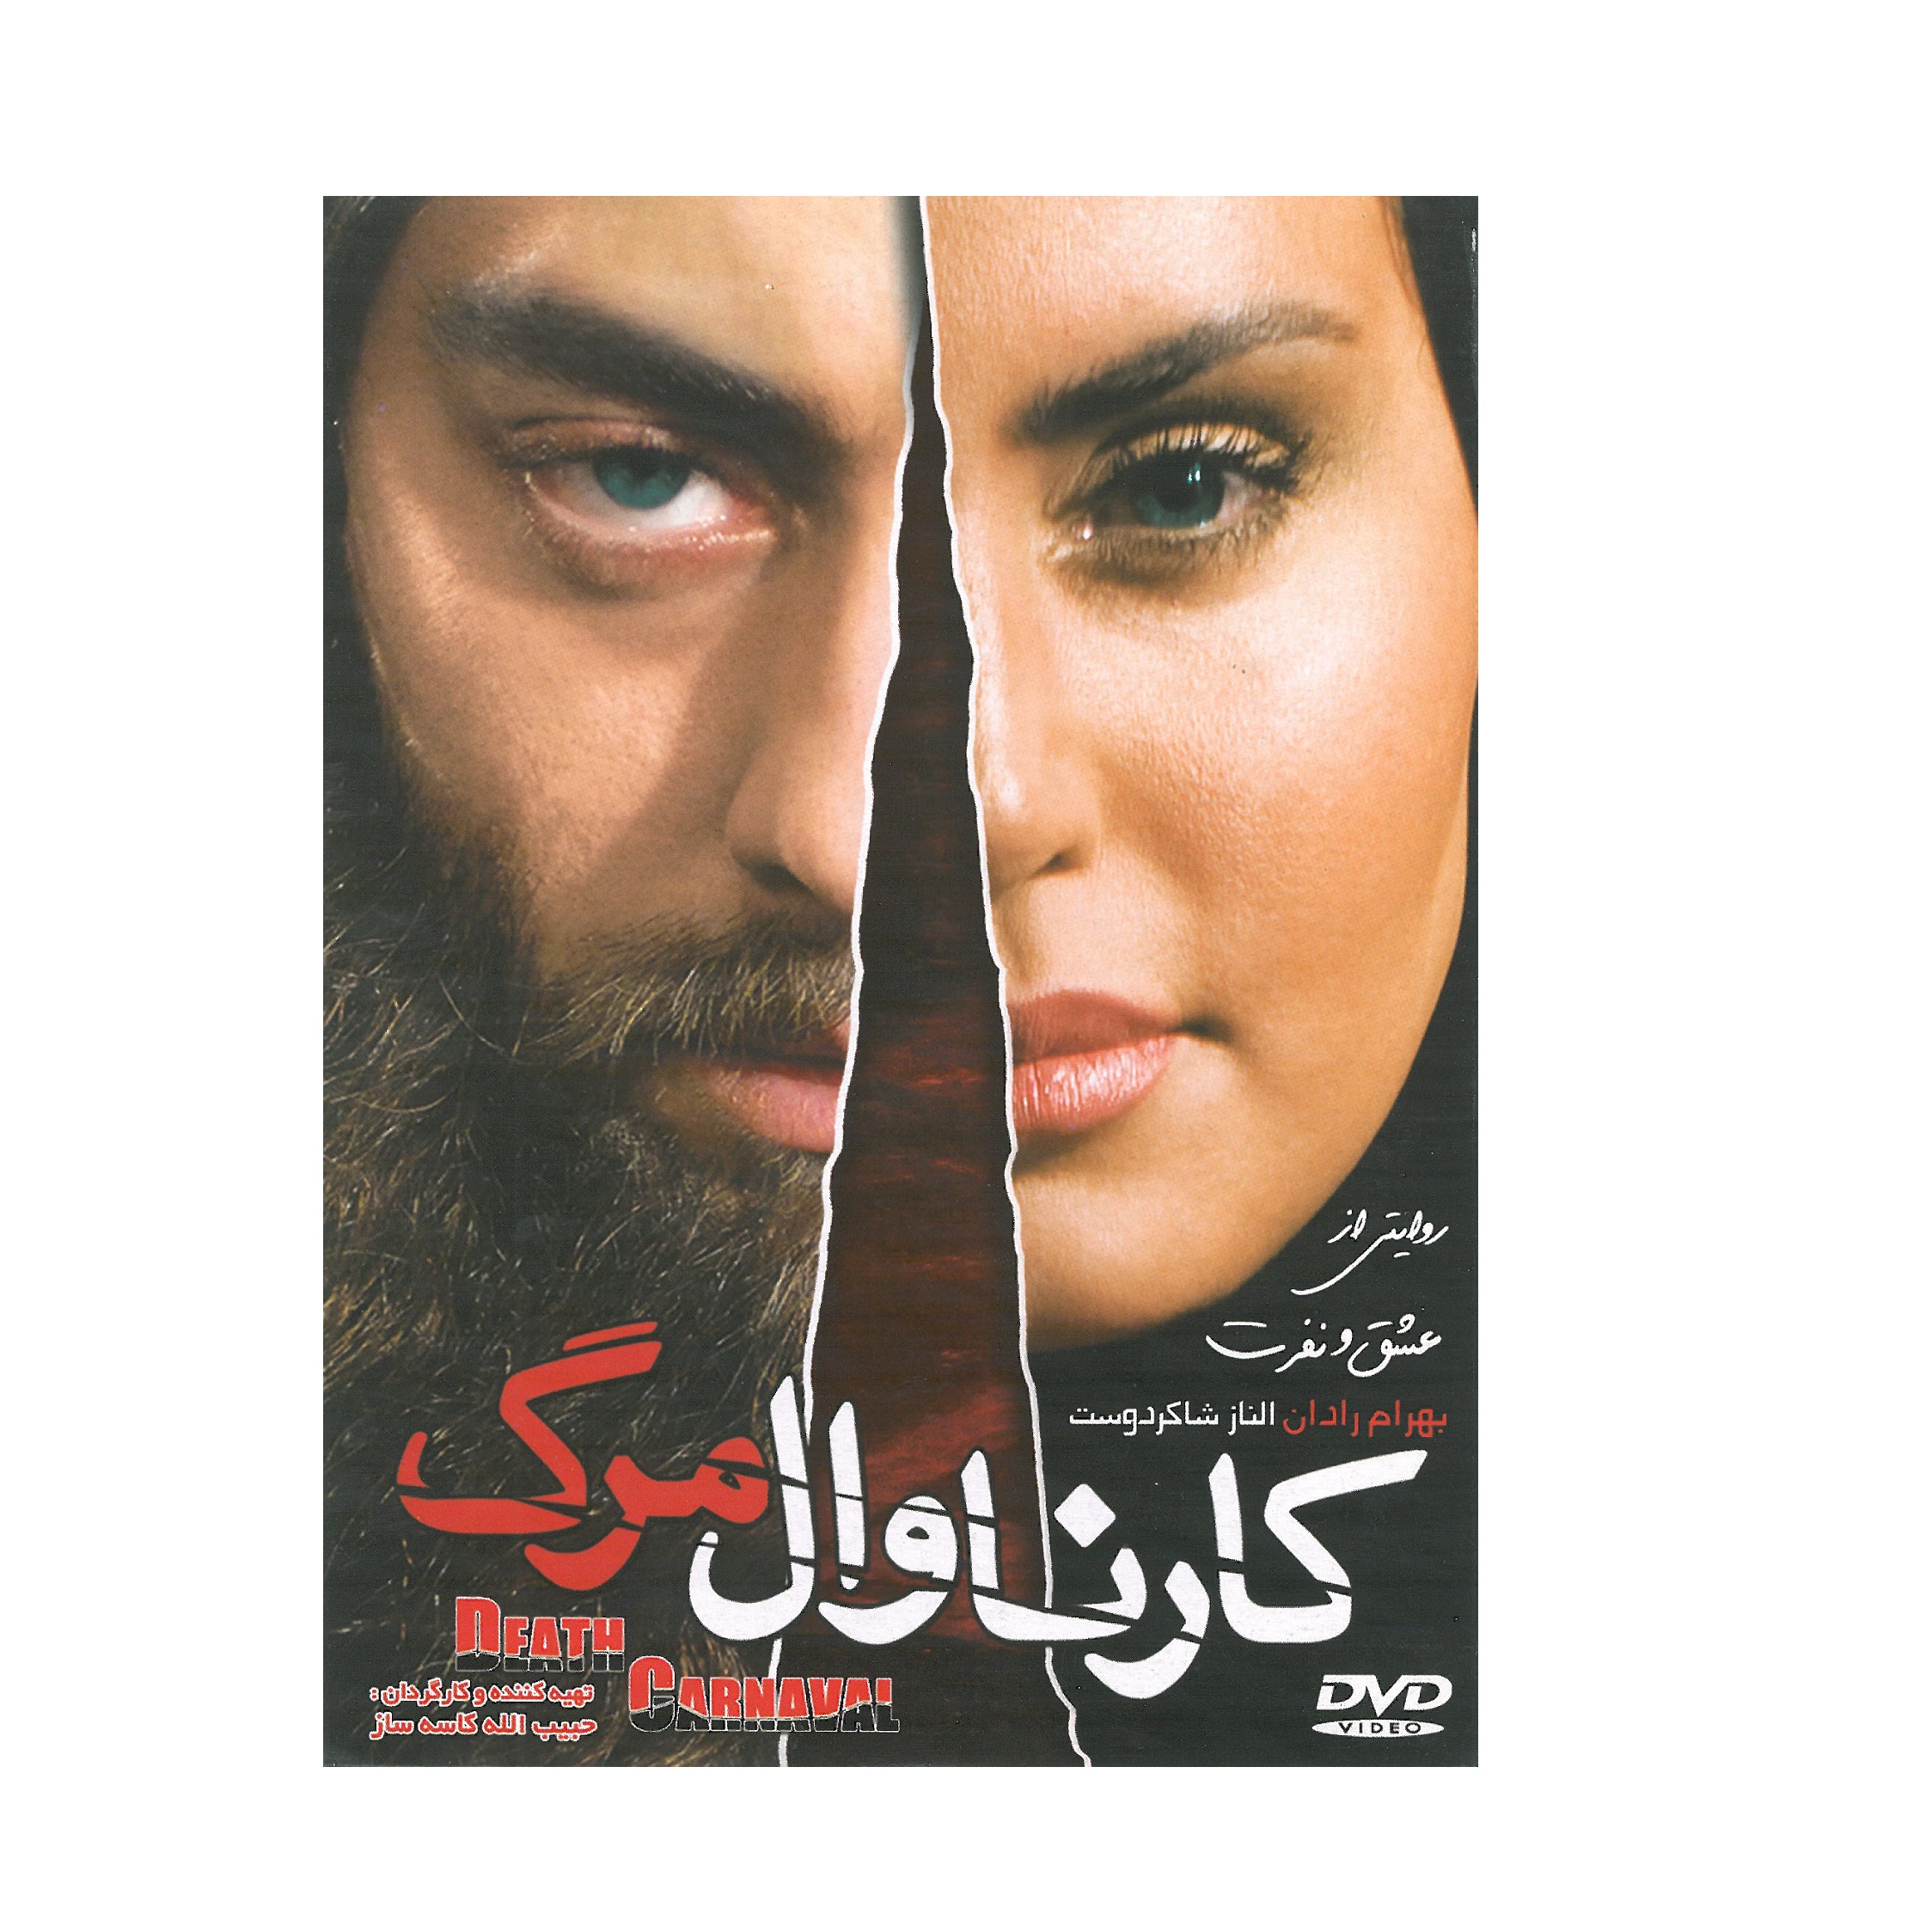 فیلم سینمایی کارناوال مرگ اثر حبیب الله کاسه ساز